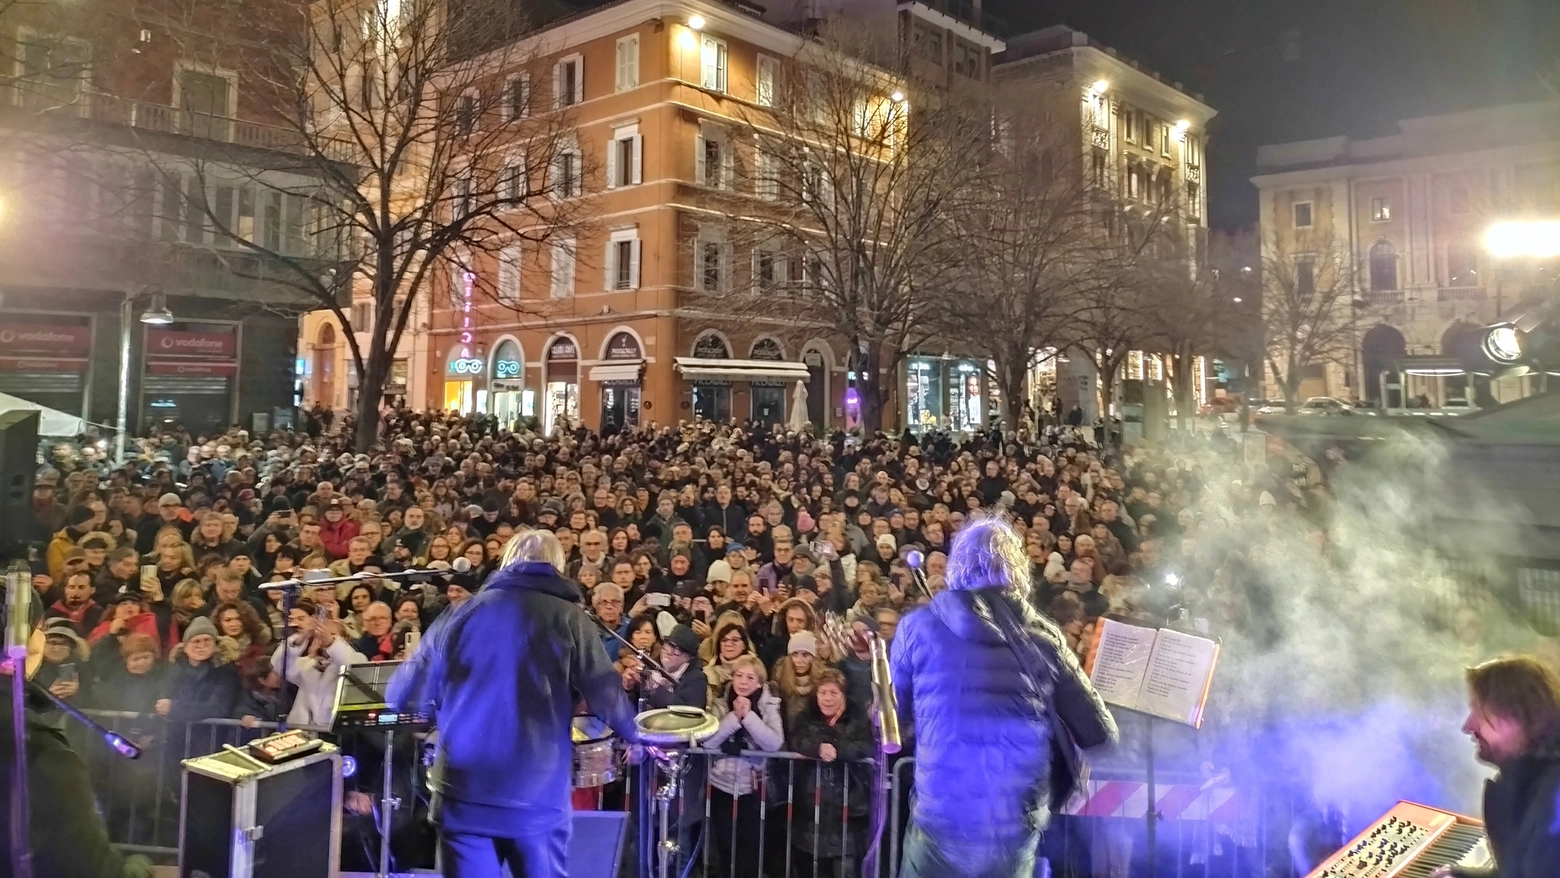 In migliaia in centro per il tributo a Pino Daniele con Tony Esposito e la Macapea